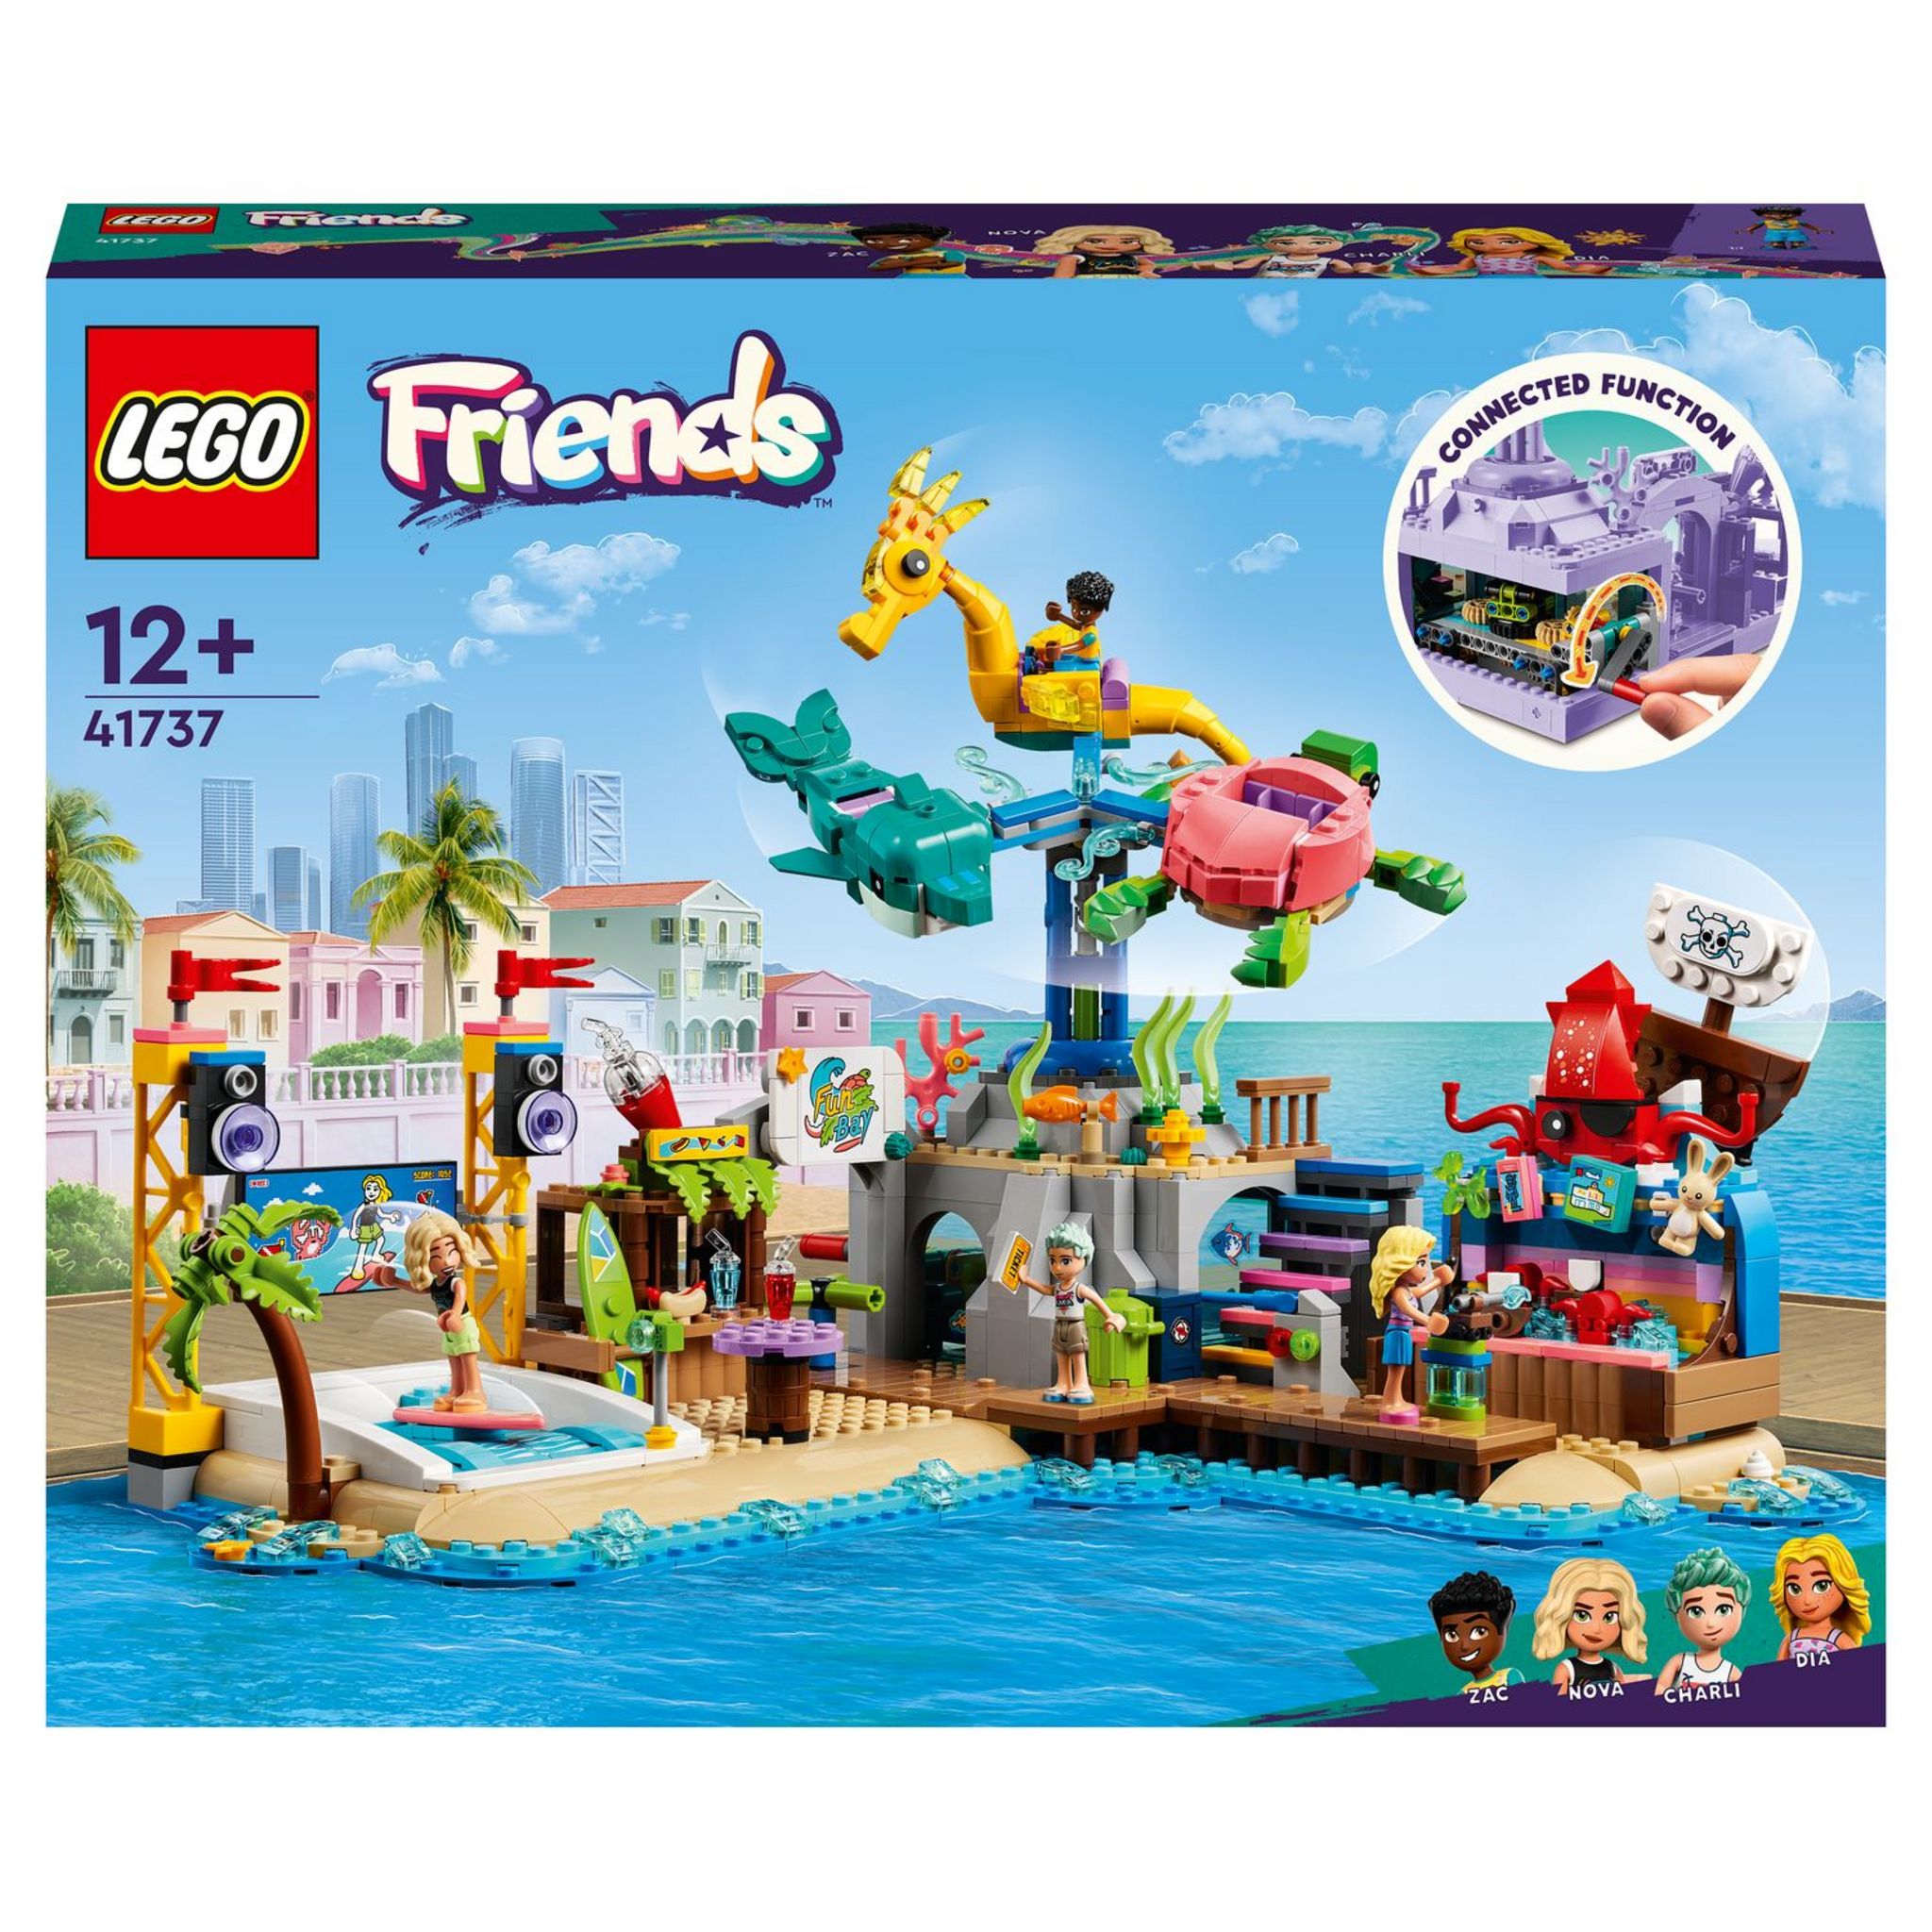 LEGO Friends 41725 - La Journée à la Plage en Buggy, Jouet avec Voiture,  Planche de Surf, Mini-Poupées, plus Figurines d'Animaux Dauphin et Chien  pas cher 